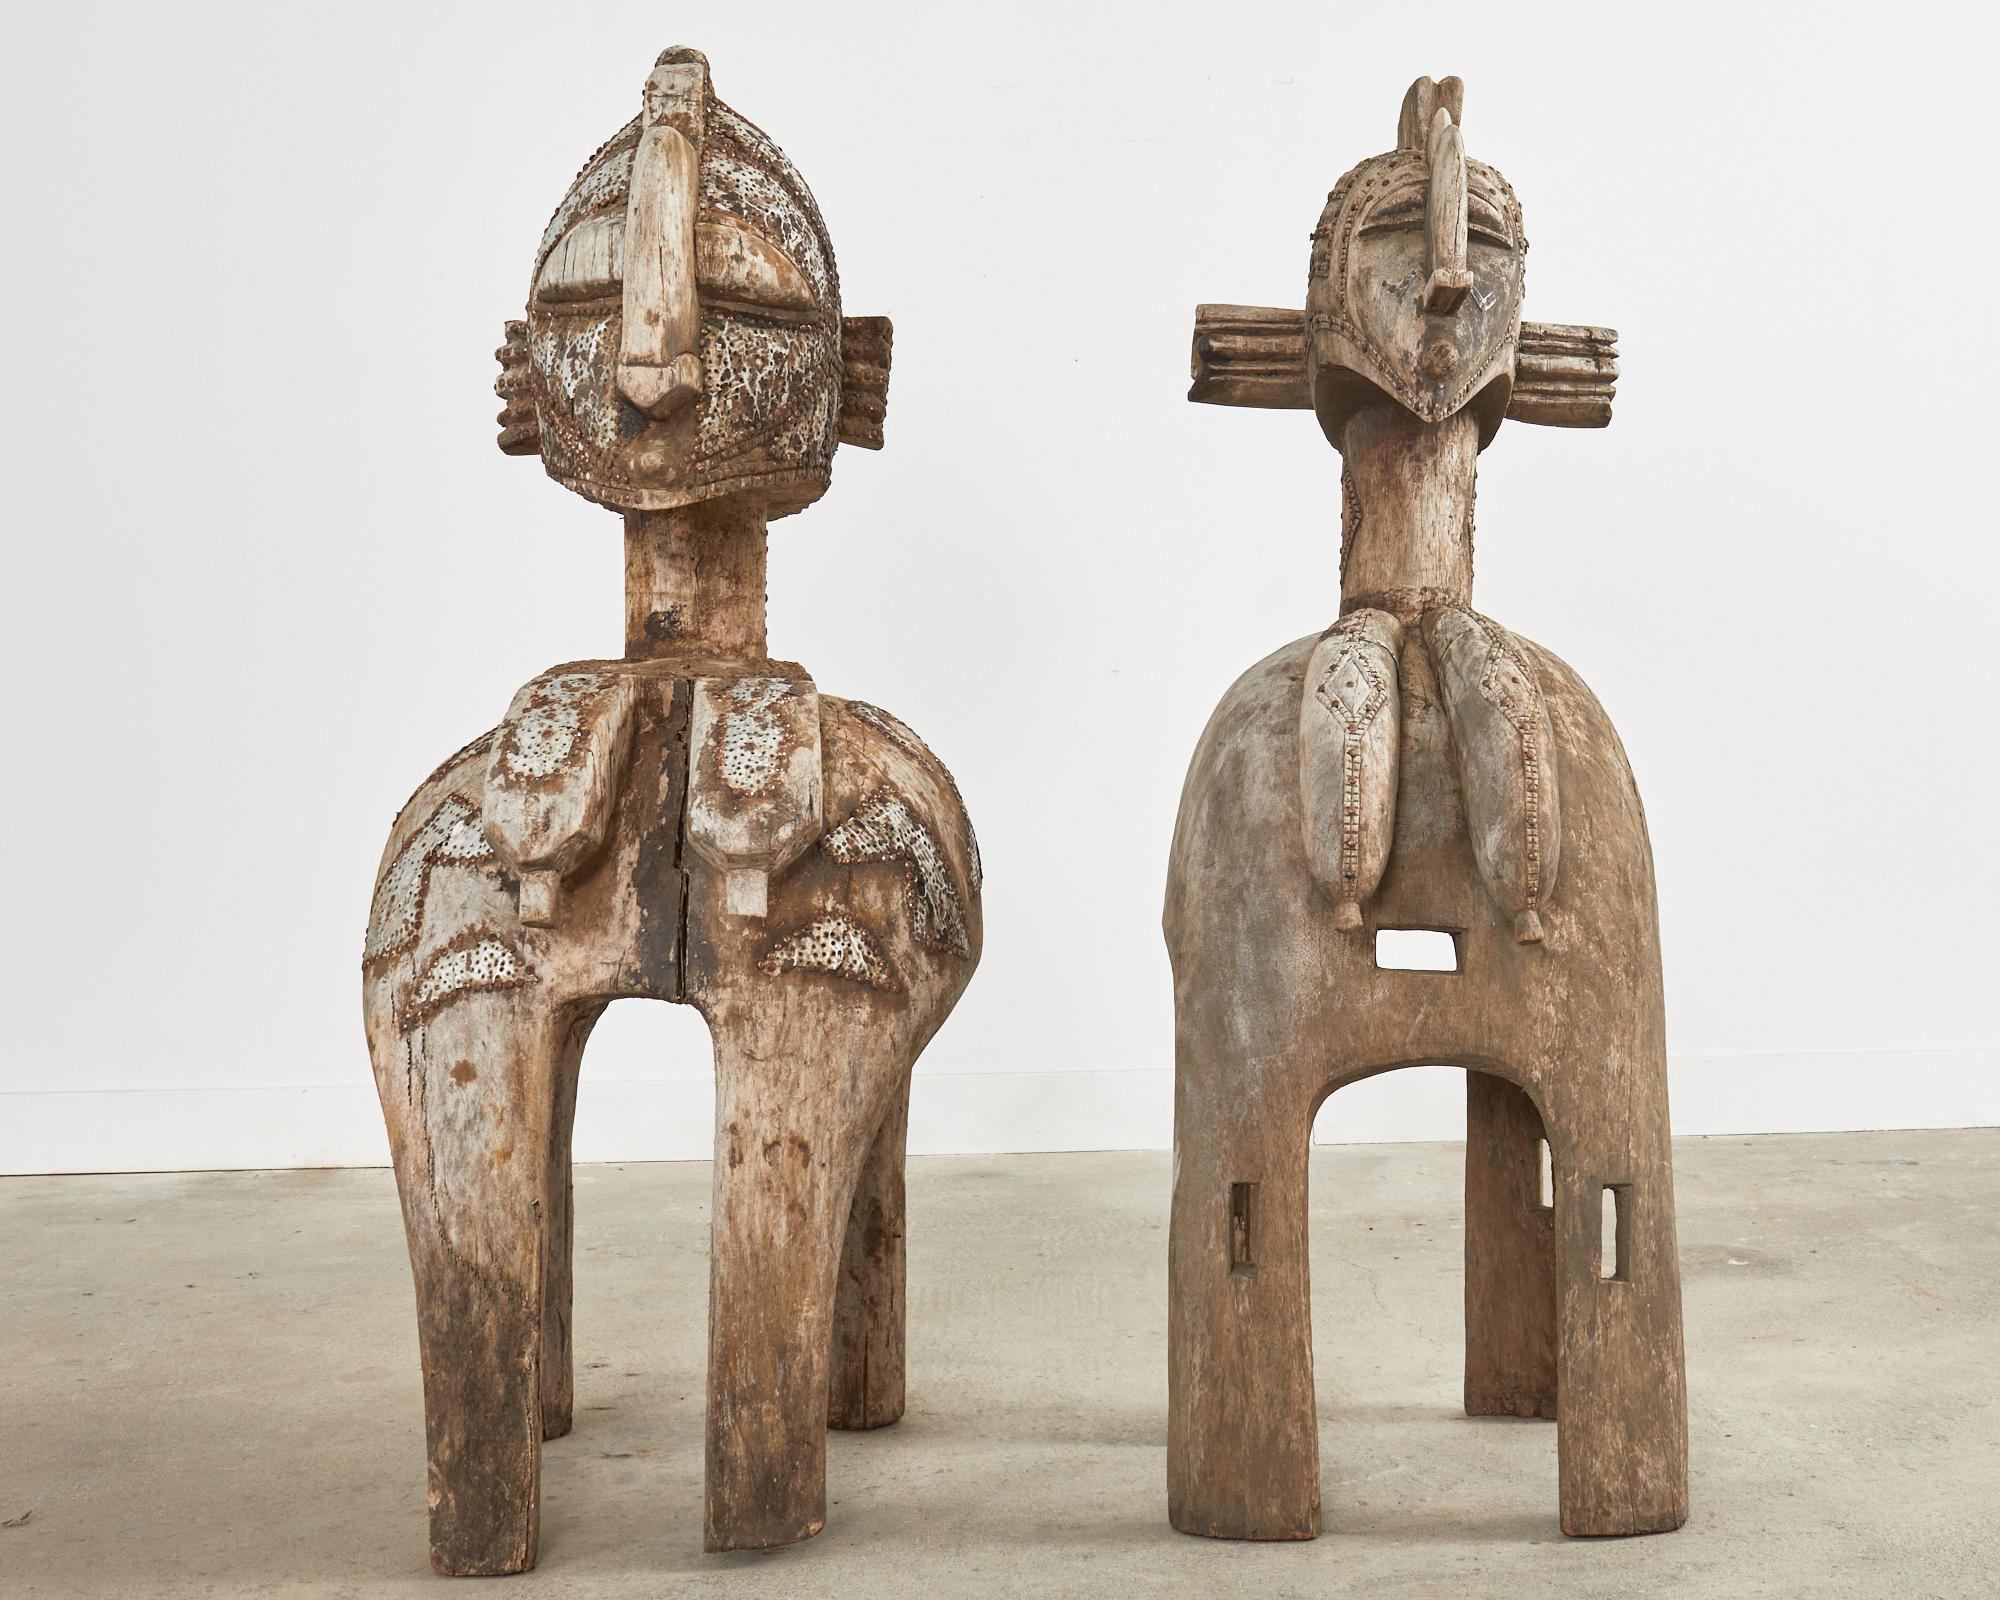 Erstaunliches Paar imposanter westafrikanischer Baga Nimba Fruchtbarkeits-Schultermasken-Skulpturen oder Statuen, die aus Teakholz geschnitzt sind. Die Kopfbedeckungen stellen Frauenbüsten auf vierbeinigen Ständern dar, die mit traditionellen